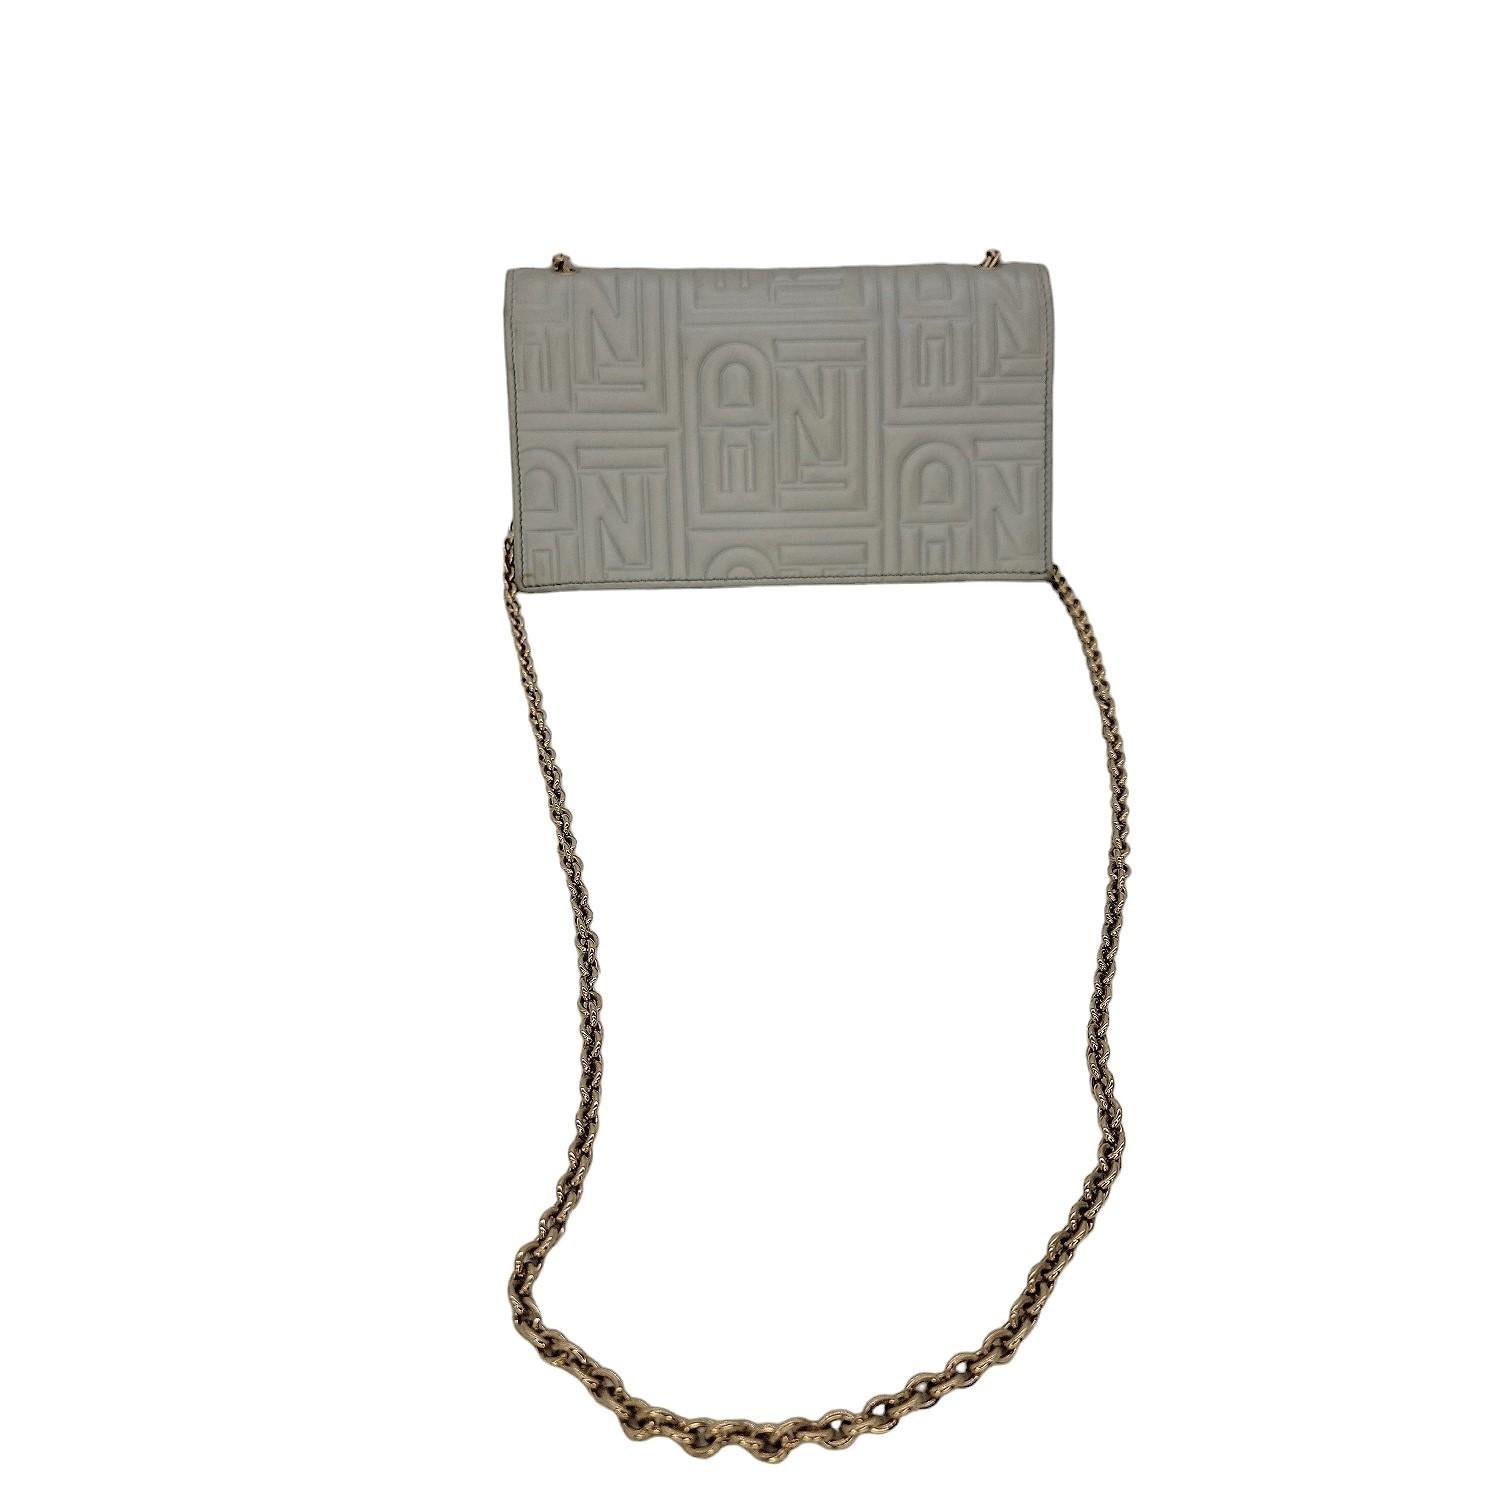 Fendi Metallic Nappa Logo geprägte lange Brieftasche auf Kette in Silber. Dieses schicke Portemonnaie ist aus silbernem geprägtem Leder mit dem Fendi FF Monogramm gefertigt. Die Tasche hat einen hüftlangen Schulterriemen aus goldenen Kettengliedern,